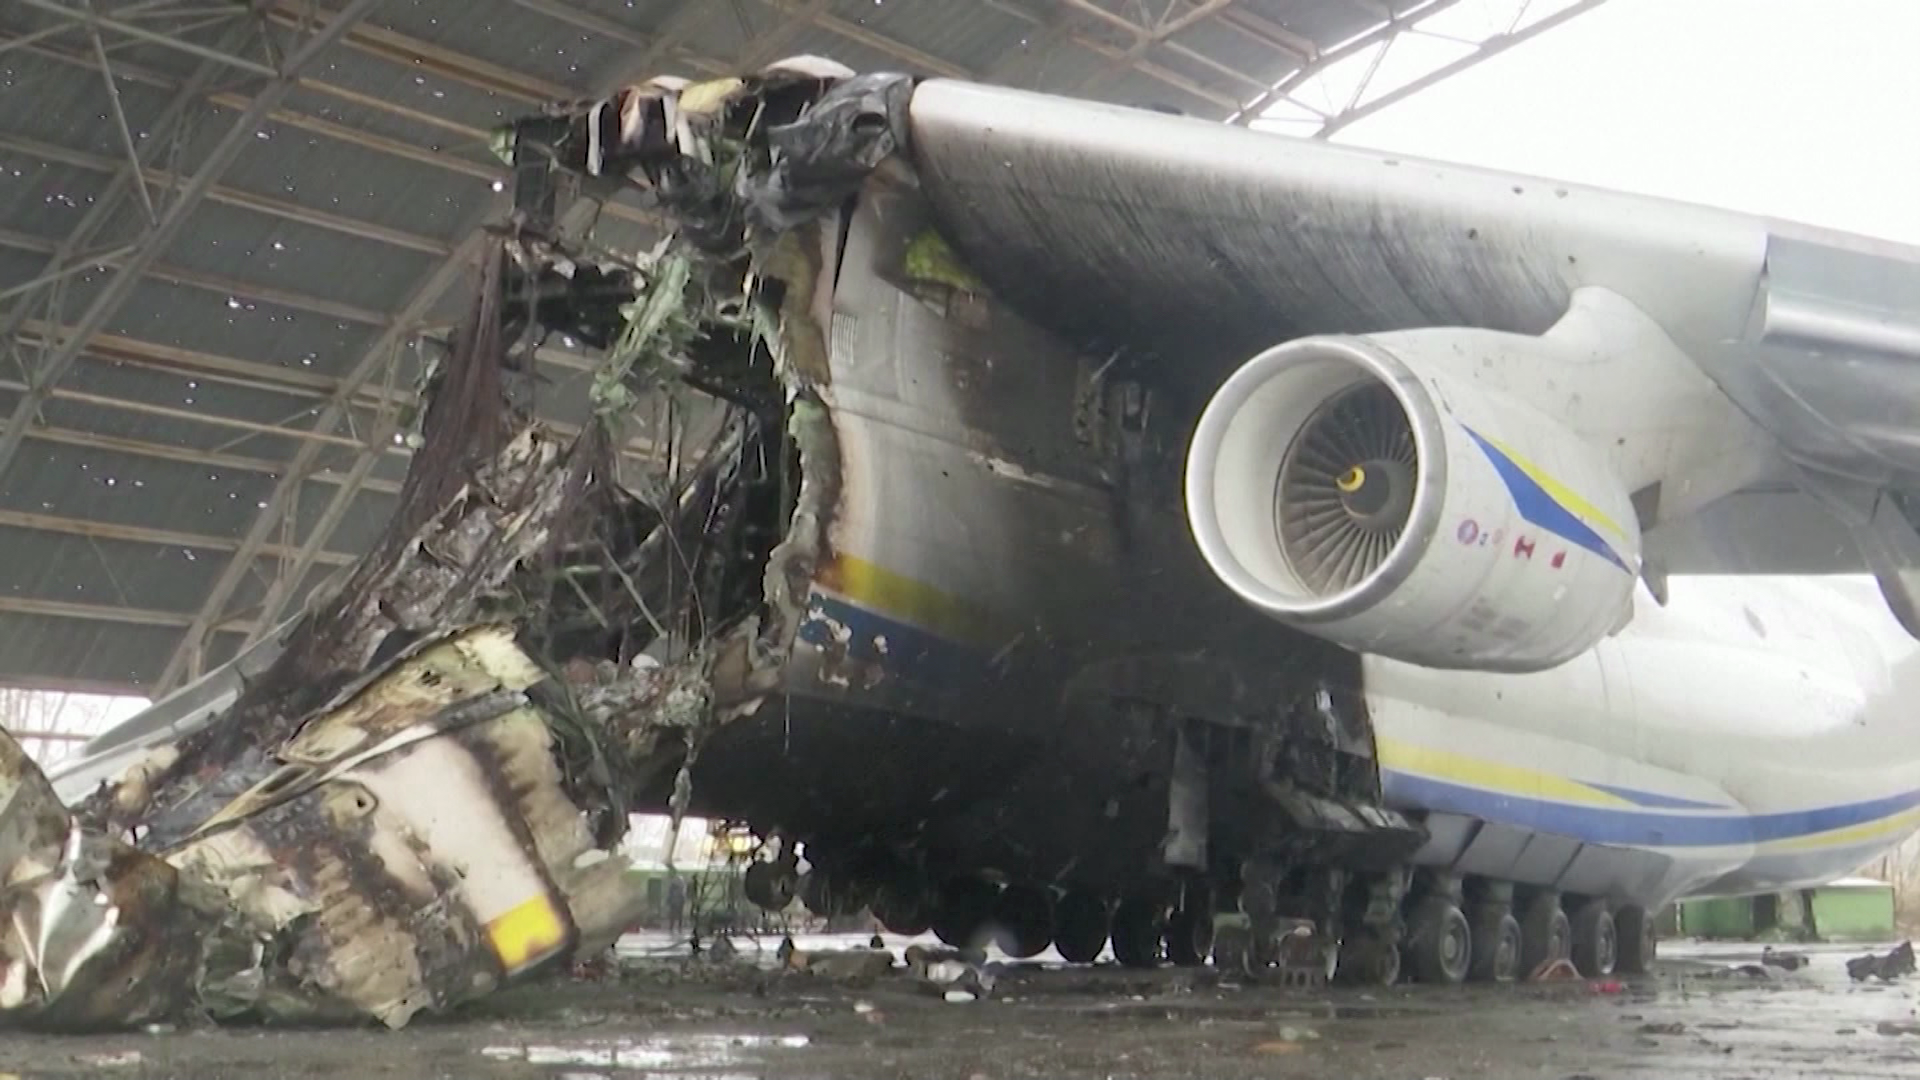 Video shows destruction of world's biggest plane in Ukraine | CNN